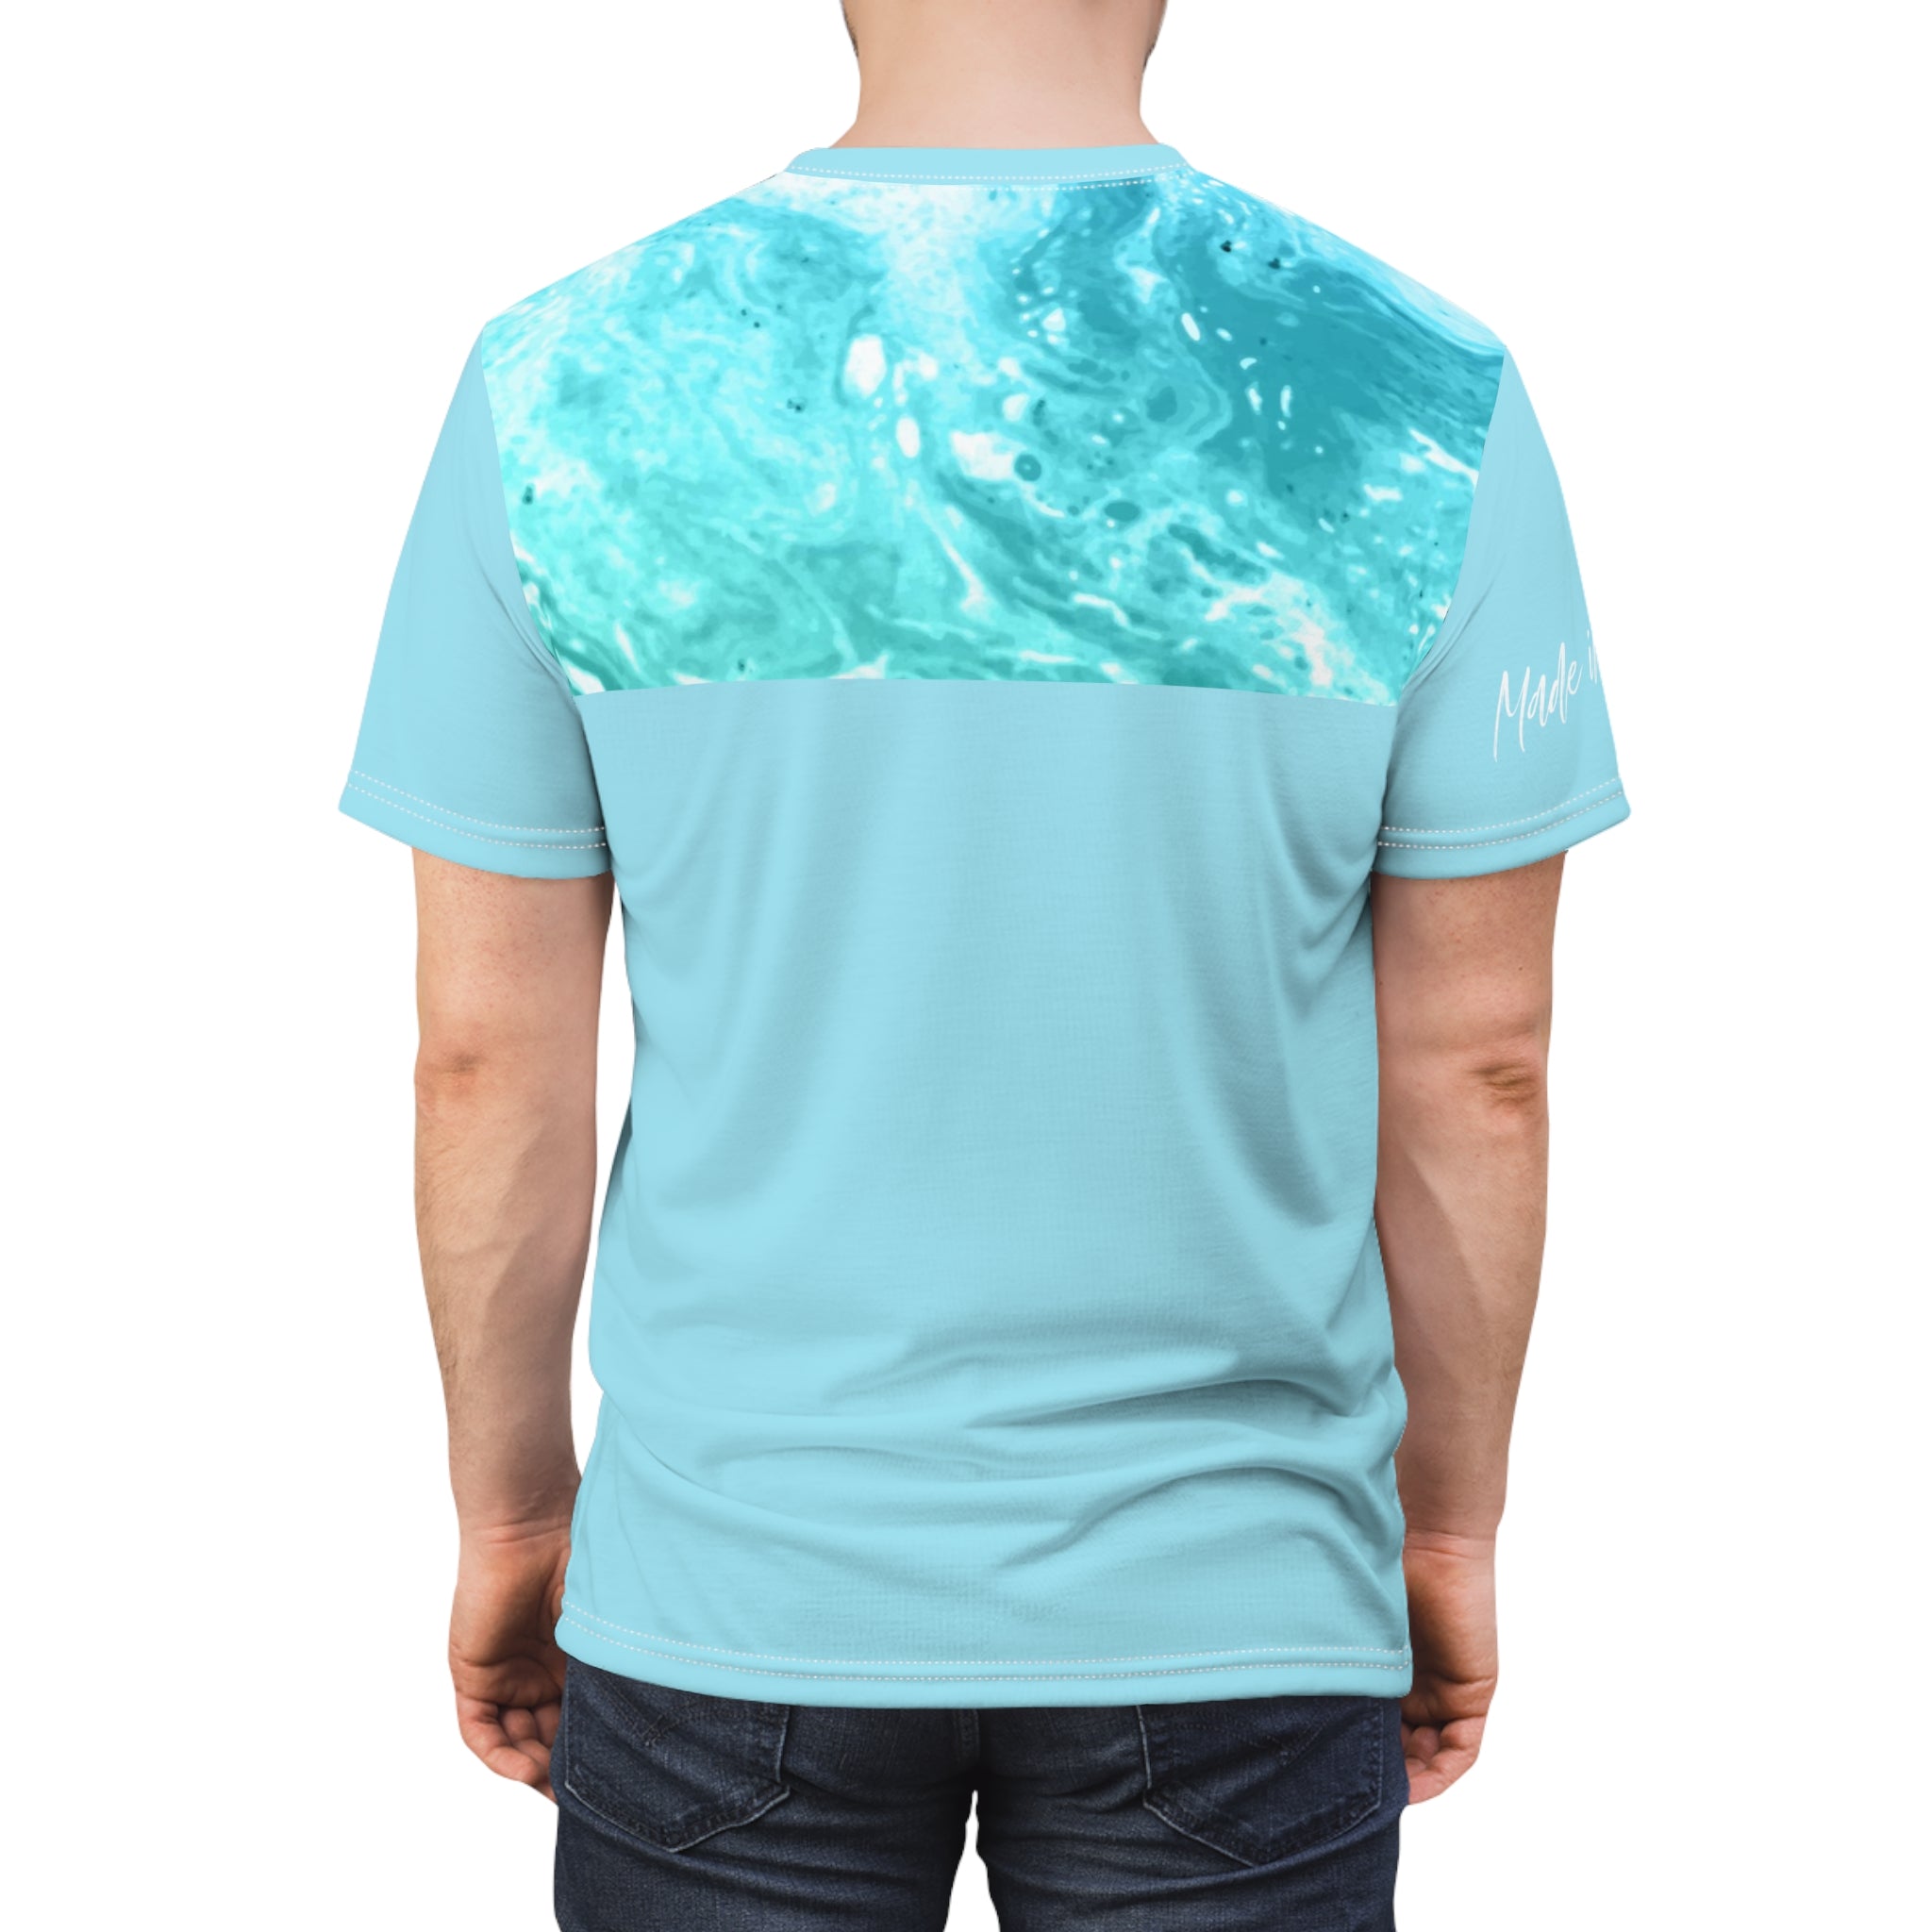 Austin T-Shirt